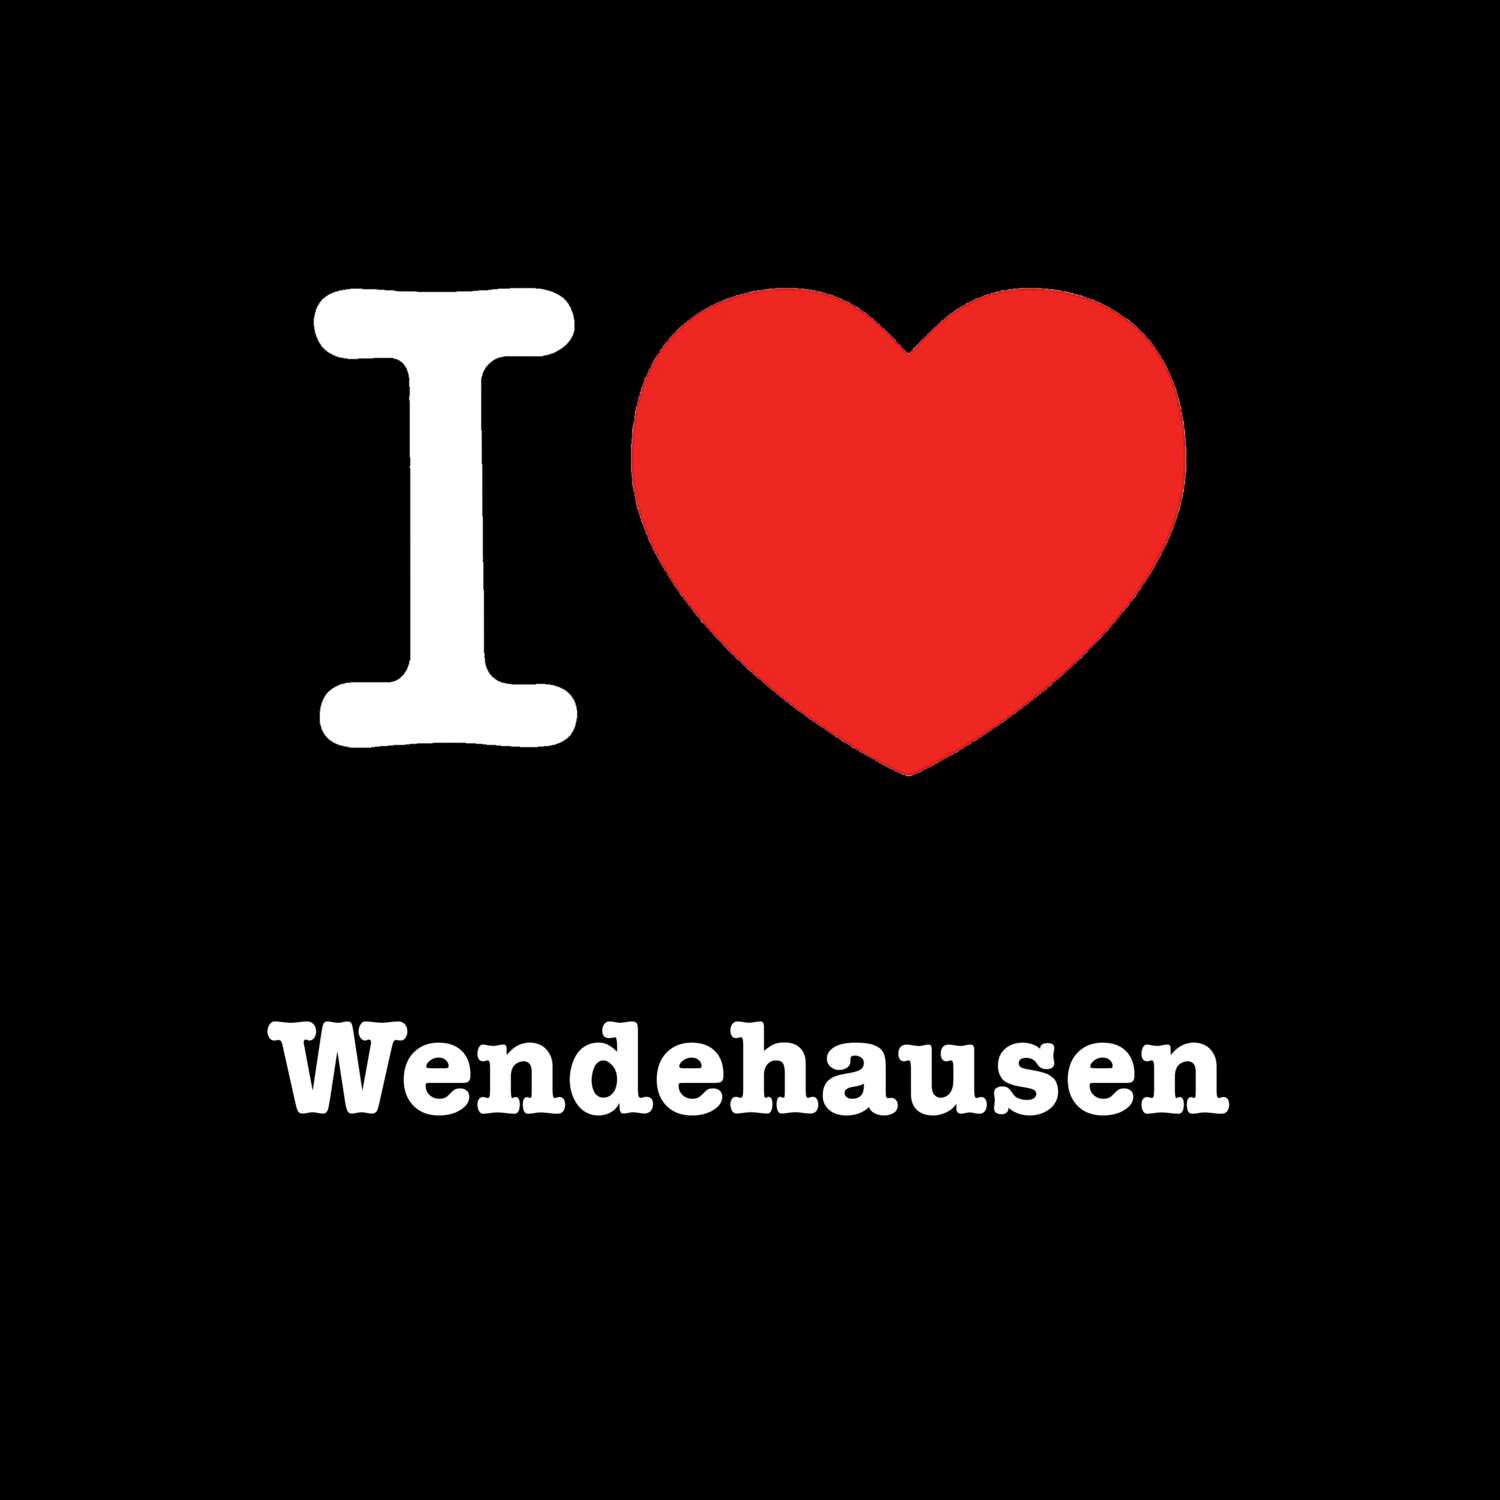 Wendehausen T-Shirt »I love«